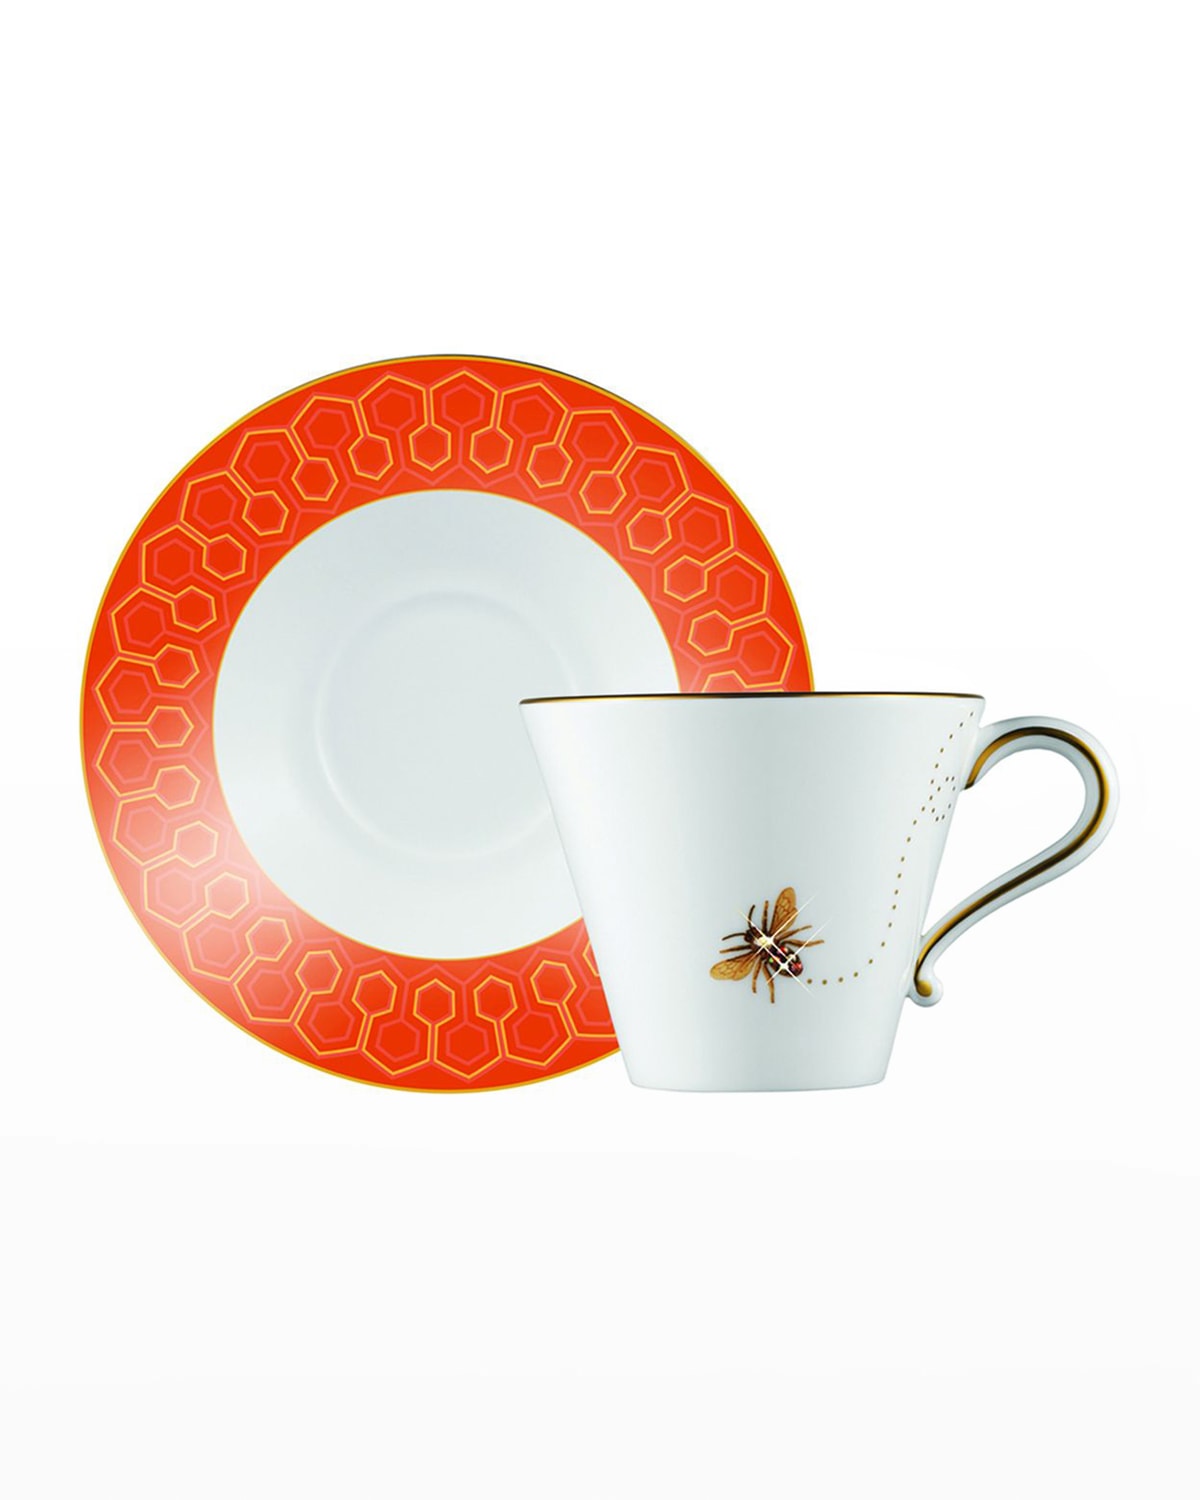 Prouna My Honeybee Teacup & Saucer In Gold Orange